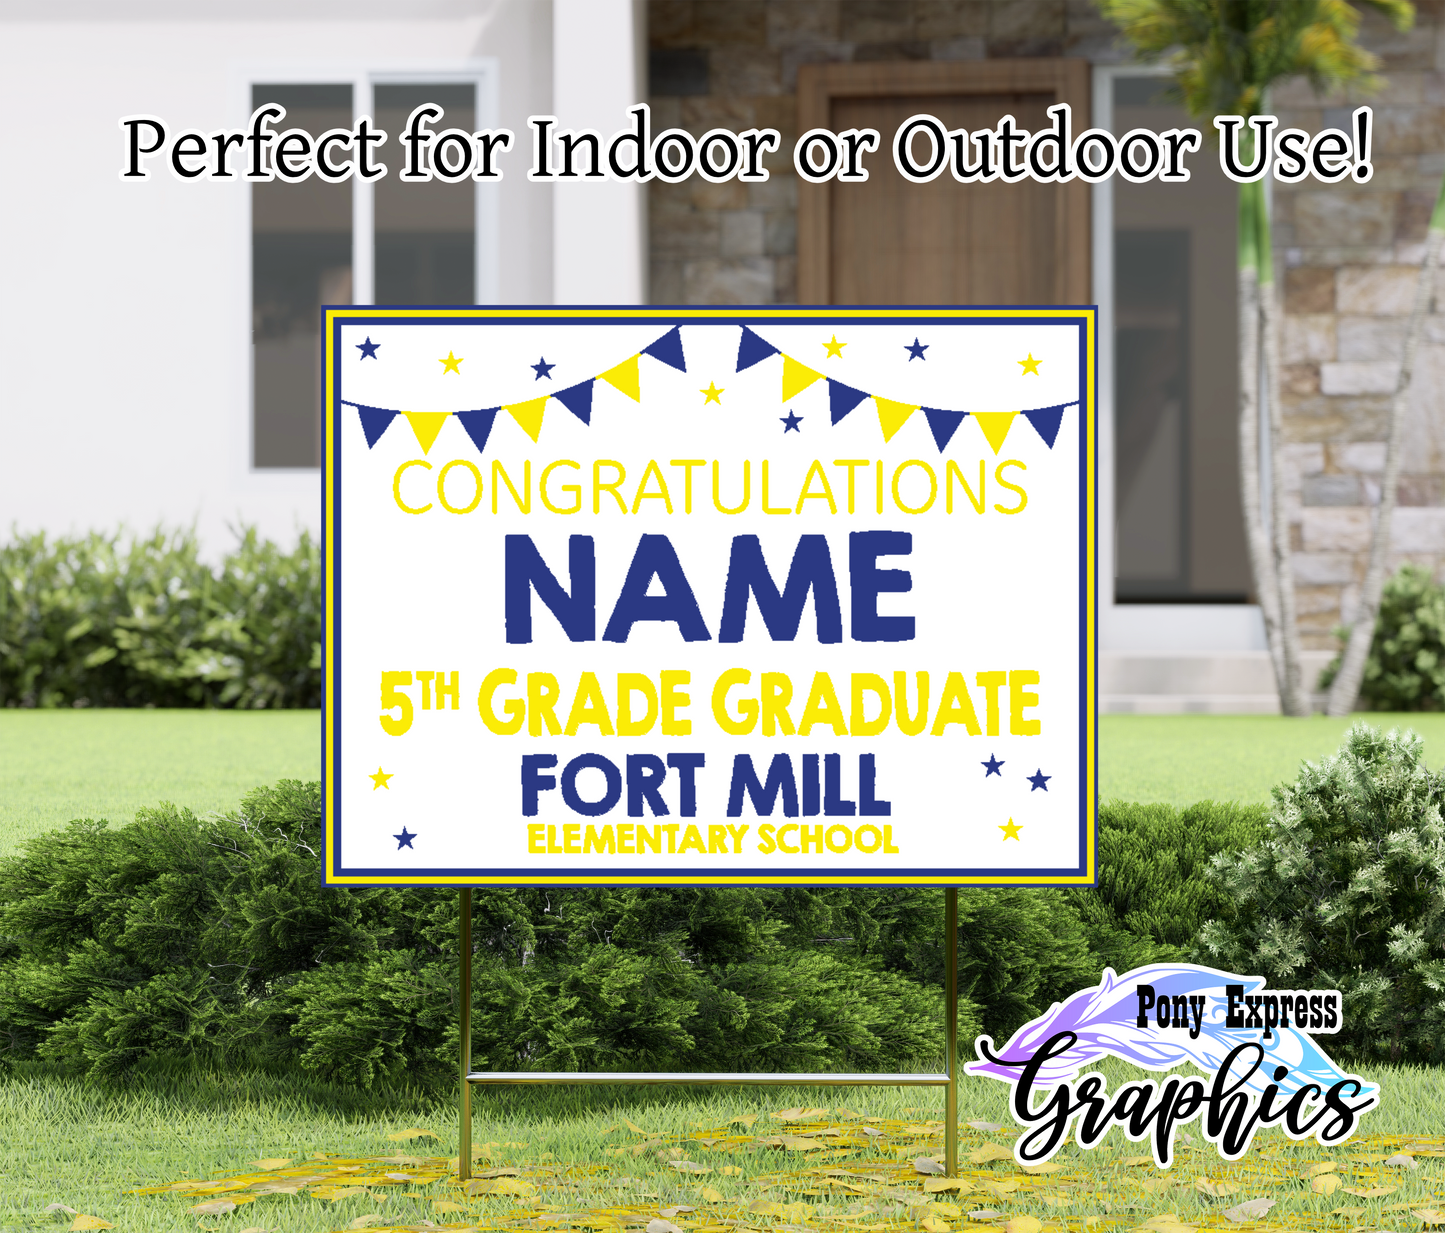 Custom Yard Signs: Fort Mill Elementary School